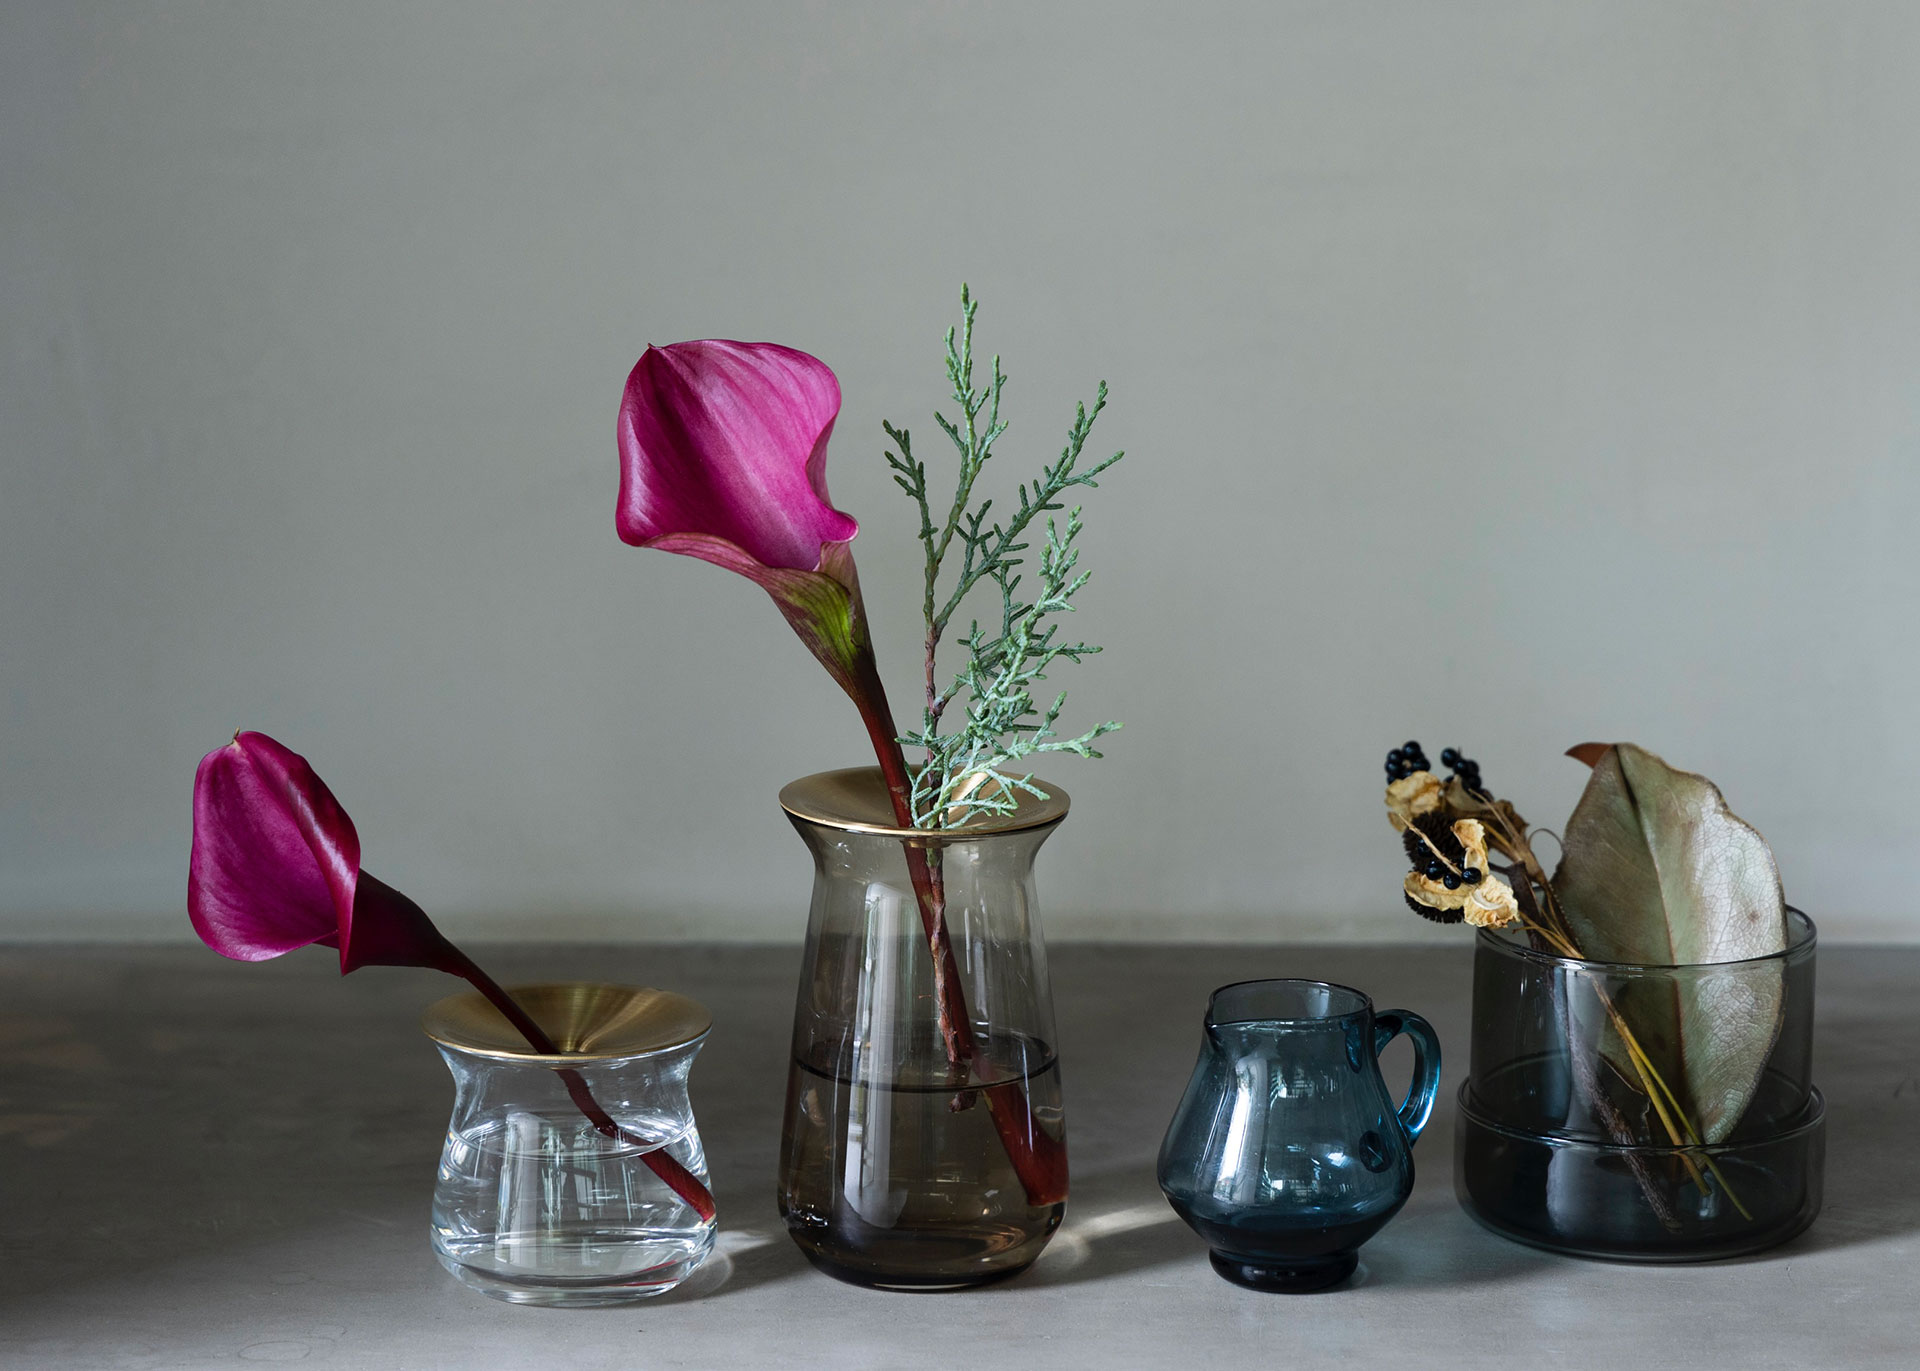 一輪挿しのLUNAは、真鍮のプレートとガラスの器を組み合わせたミニマムなデザイン。花を挿すだけで絵になりやすいのが魅力。